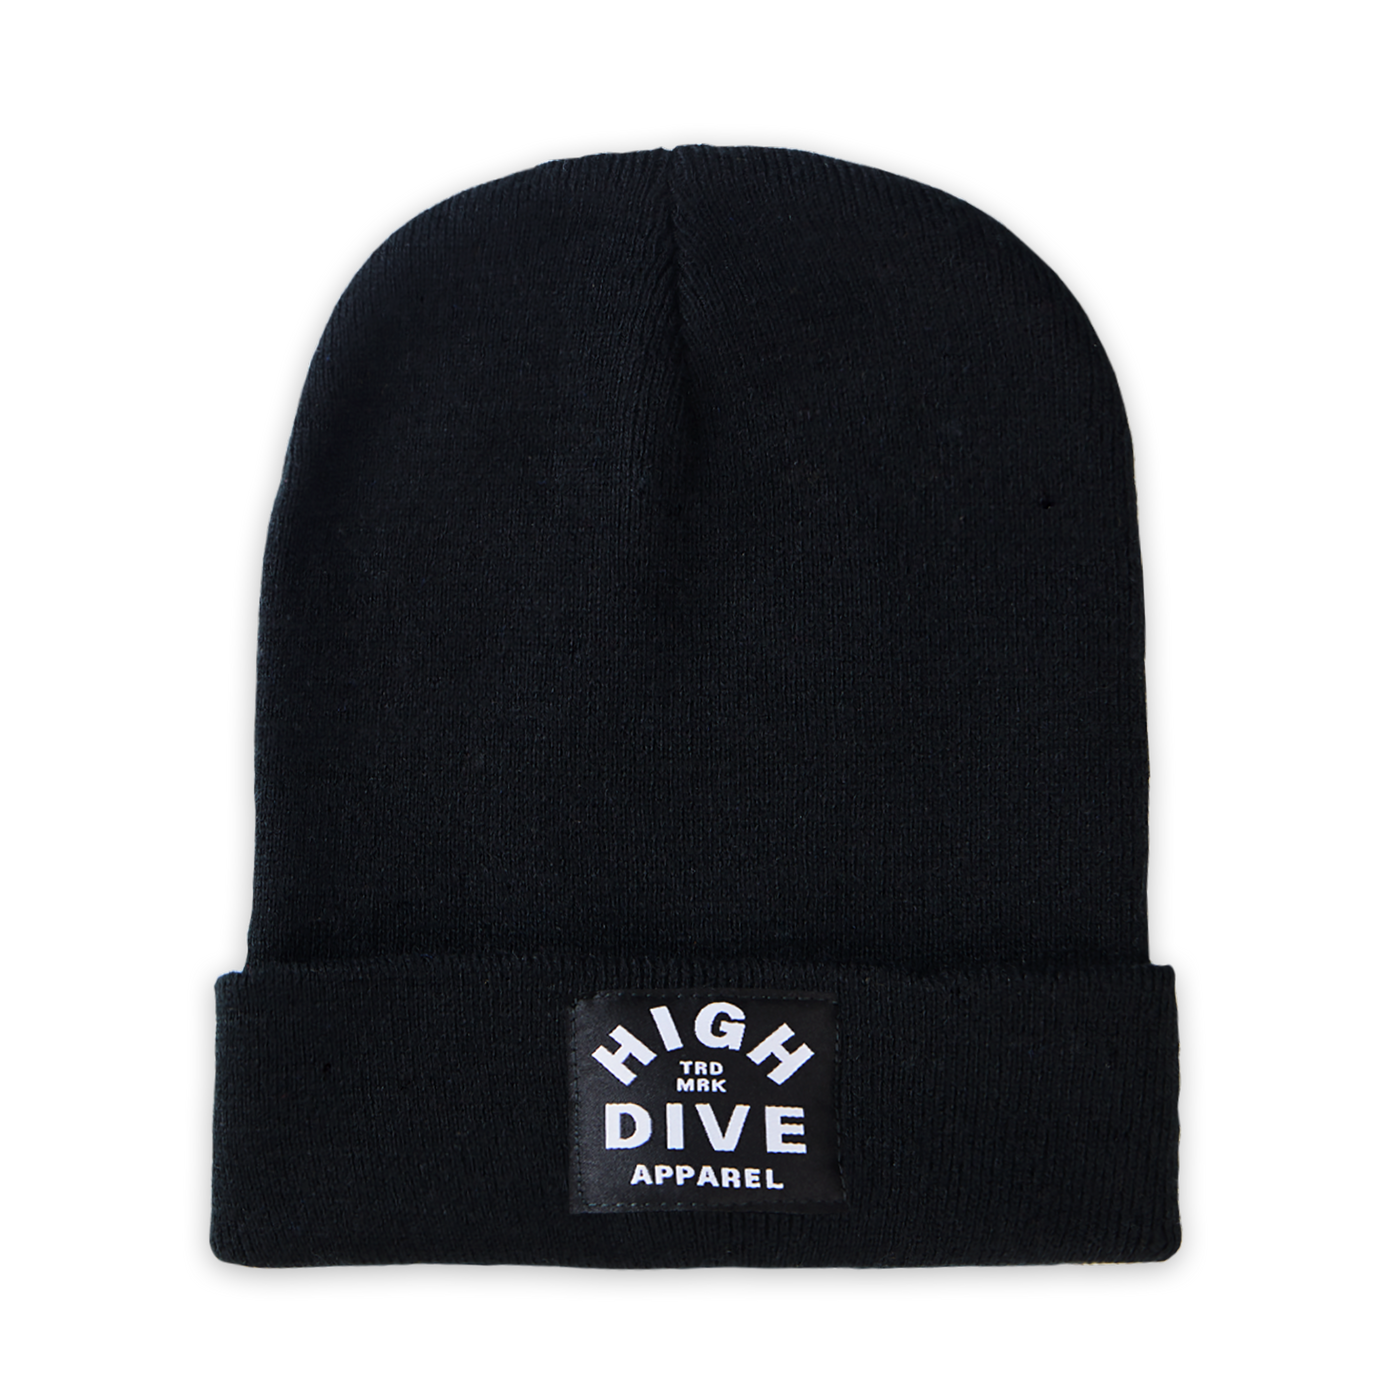 Schwarze Mütze mit schwarzem HDA-Label